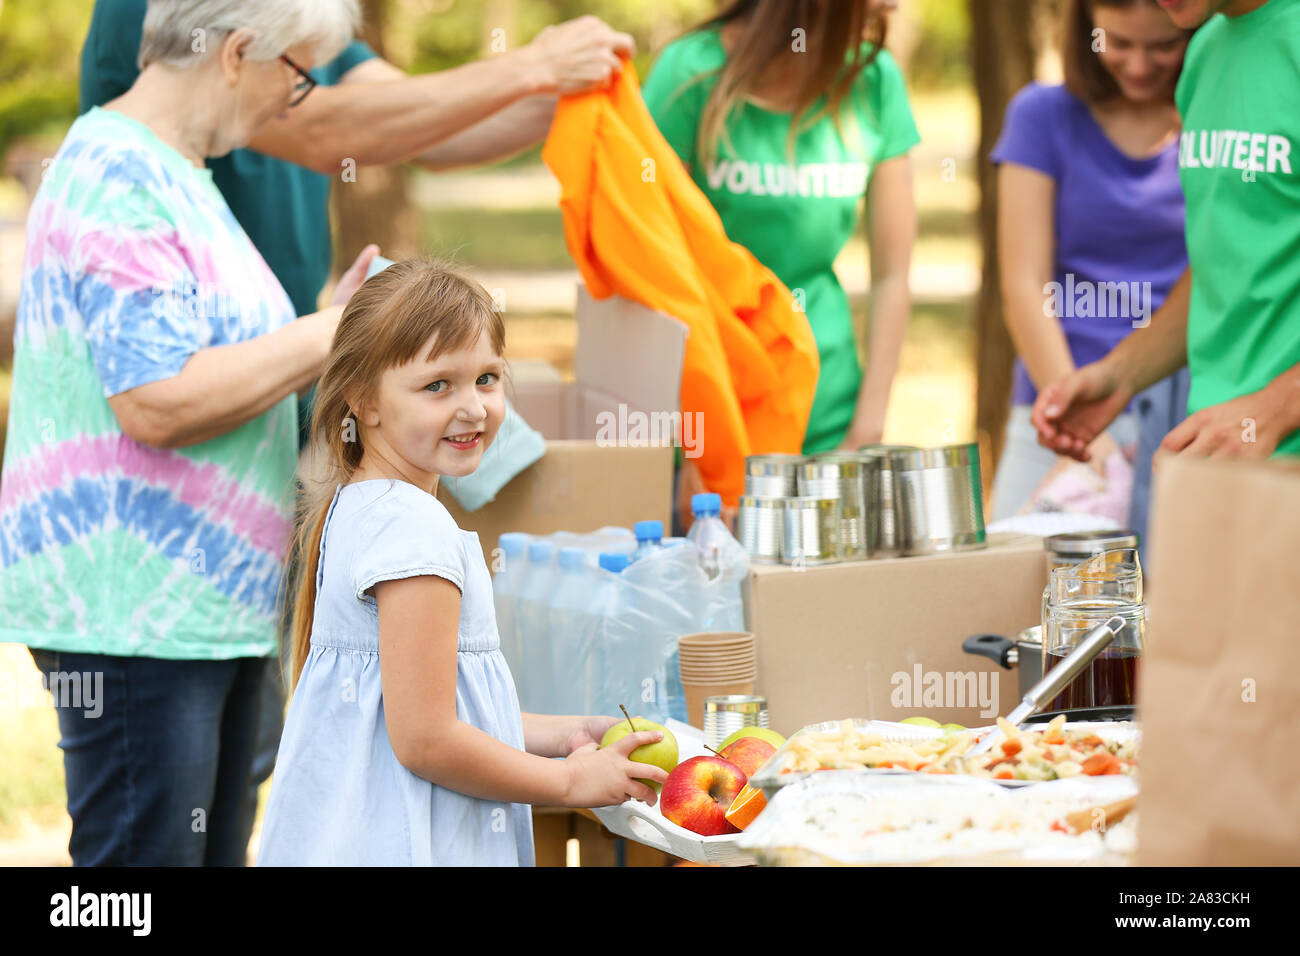 Little poor girl receiving food from volunteers outdoors Stock Photo